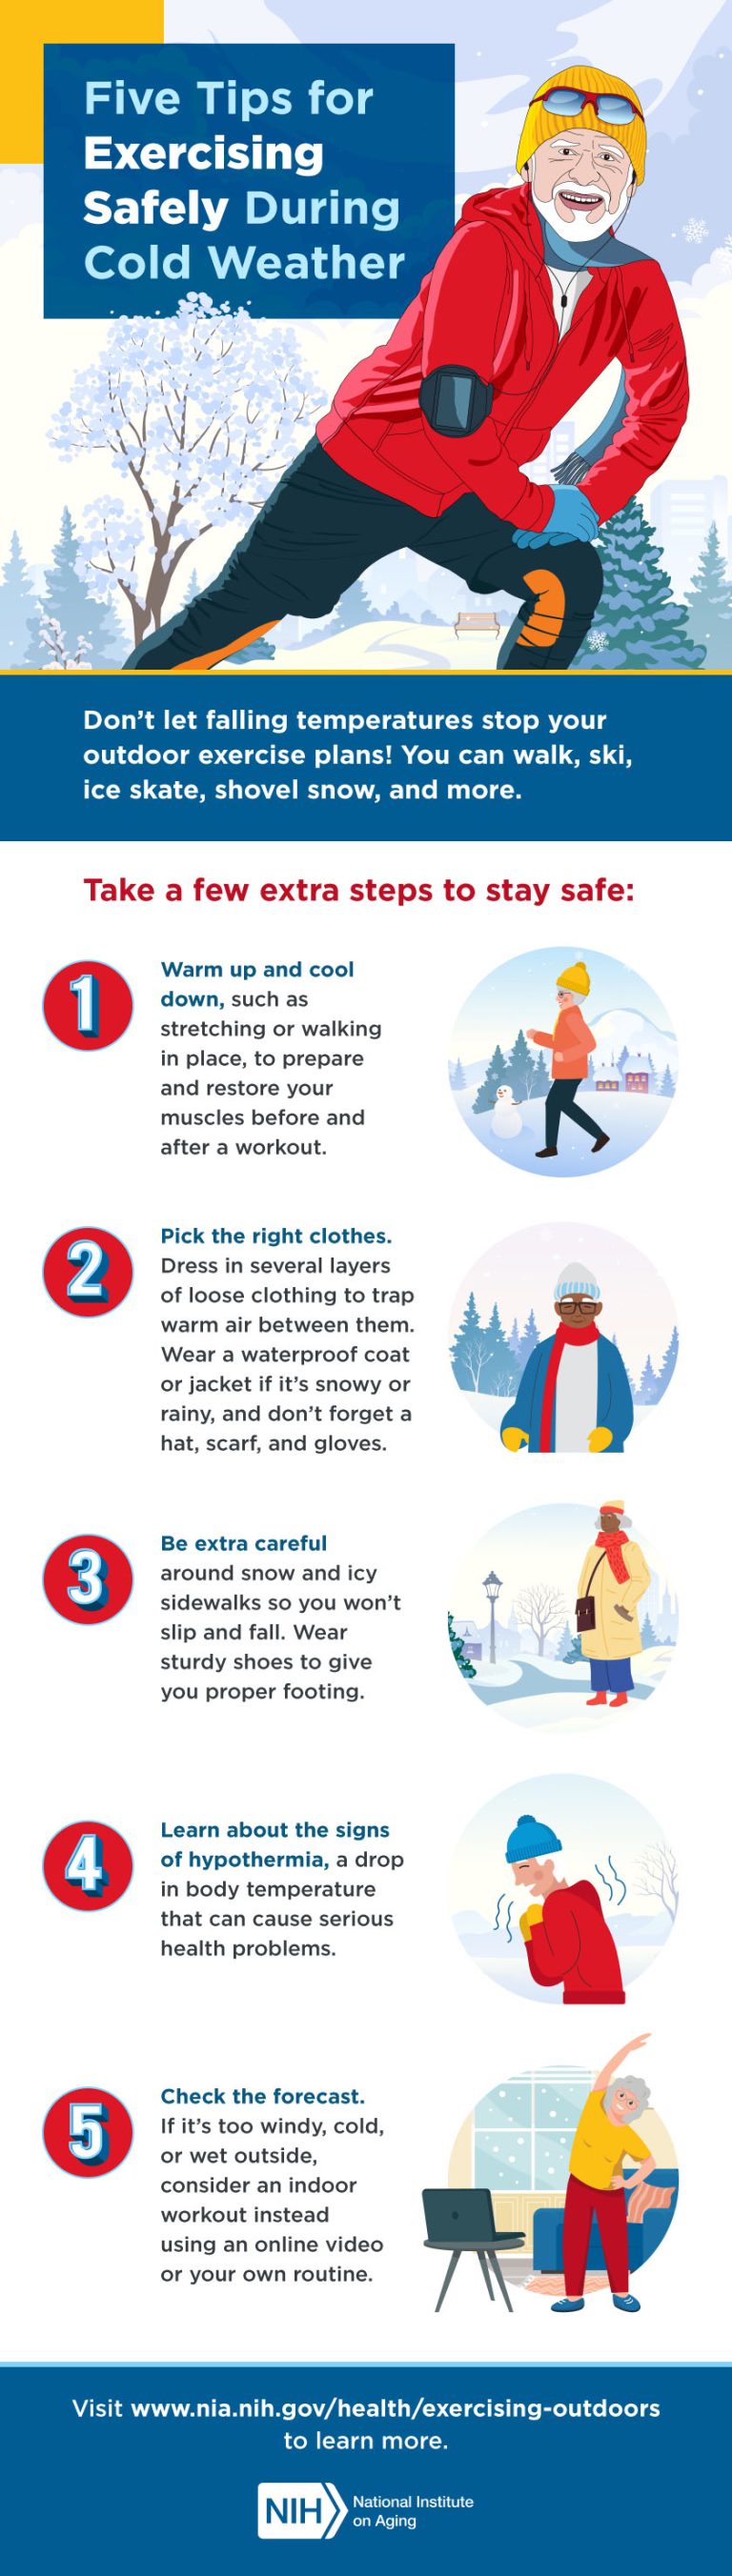 Consejos para hacer ejercicio en climas fríos